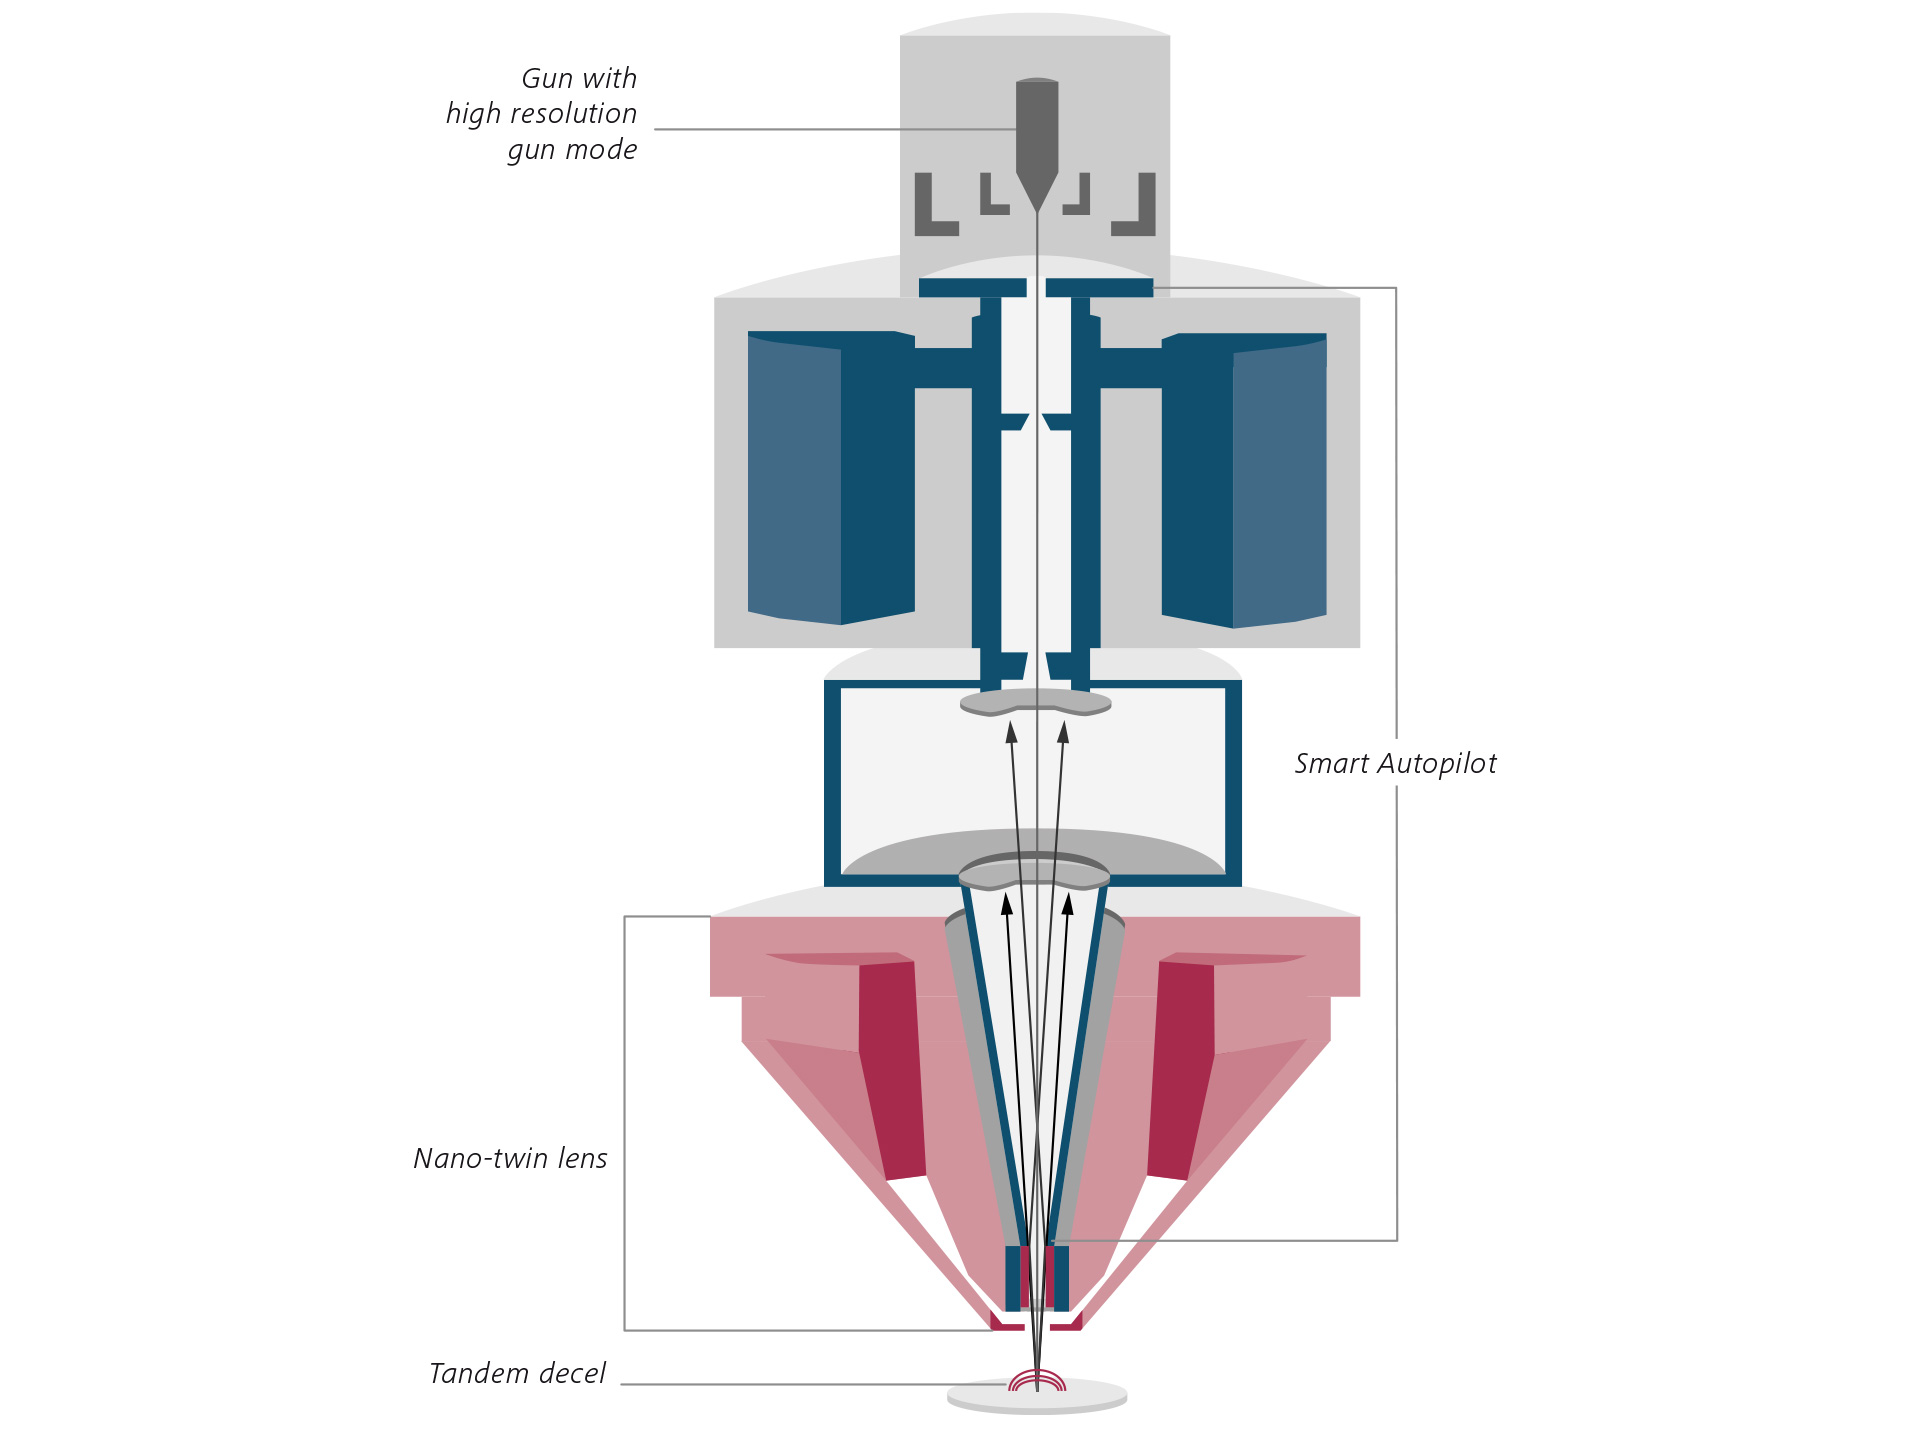 Conception optique novatrice de la colonne Gemini 3. Coupe transversale schématique de GeminiSEM 560. Lentille Nano-twin (rouge), Smart Autopilot (bleu). 